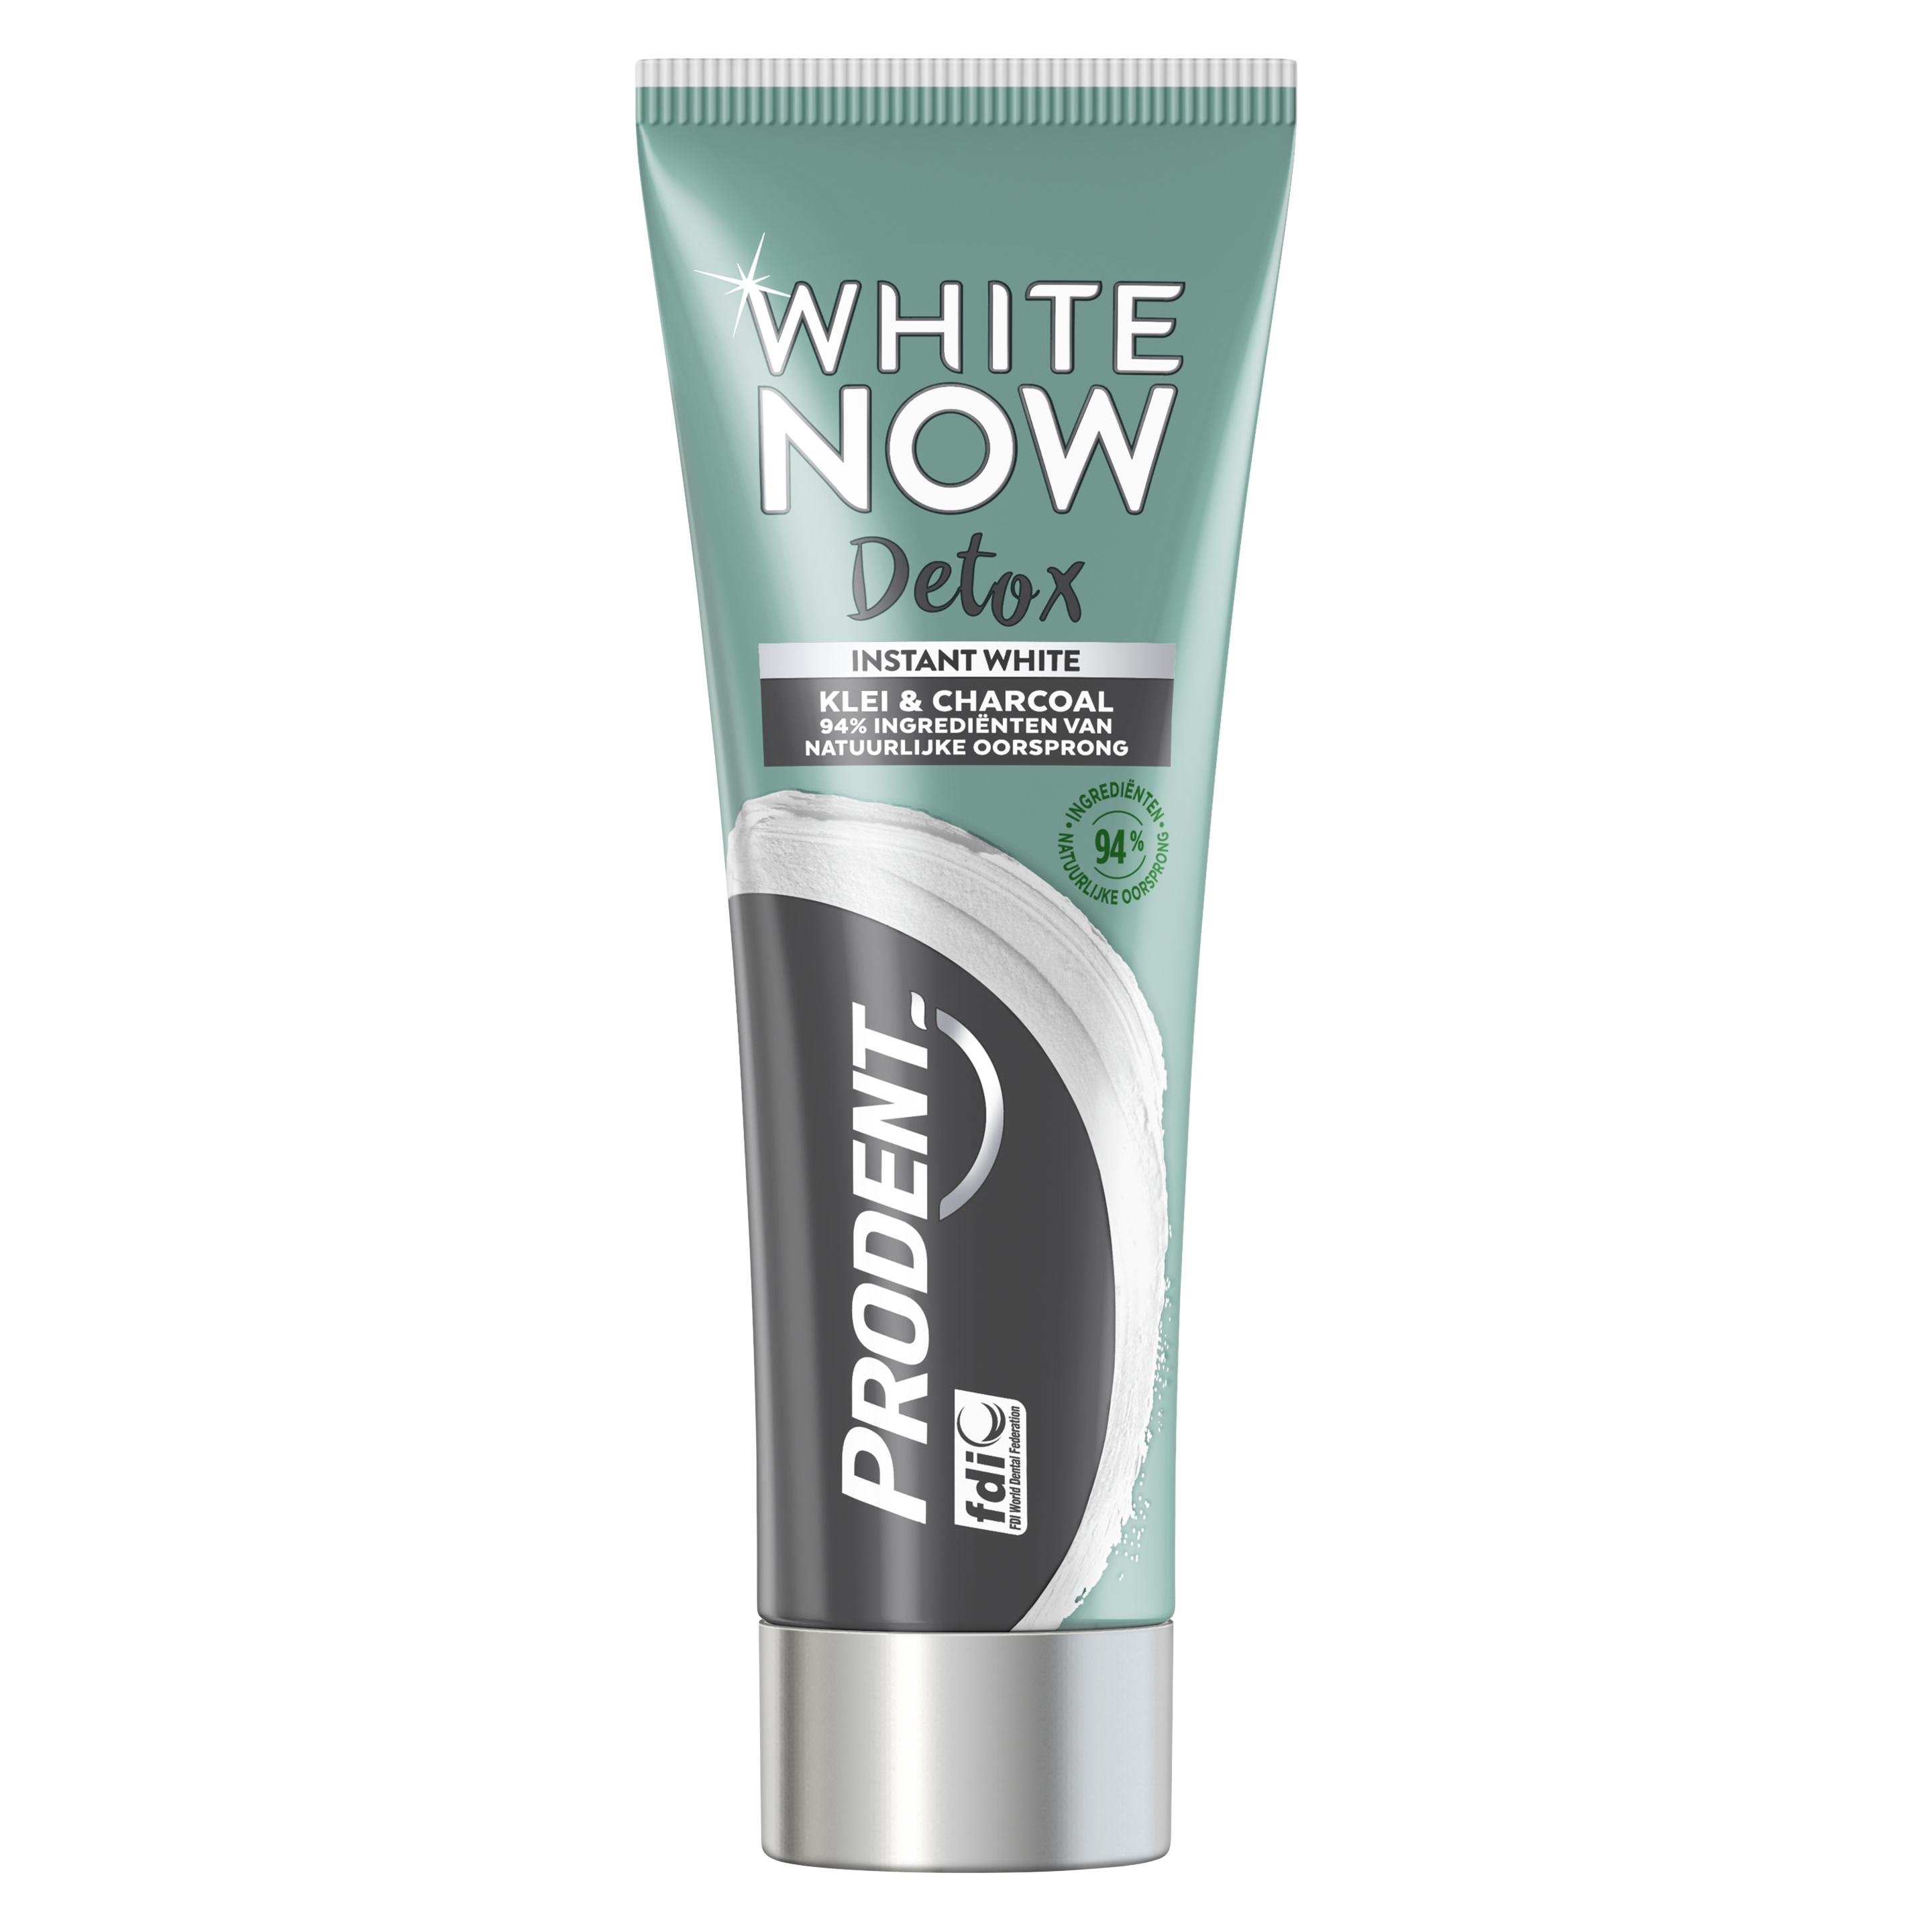 Prodent White Now Detox - Klei & Charcoal